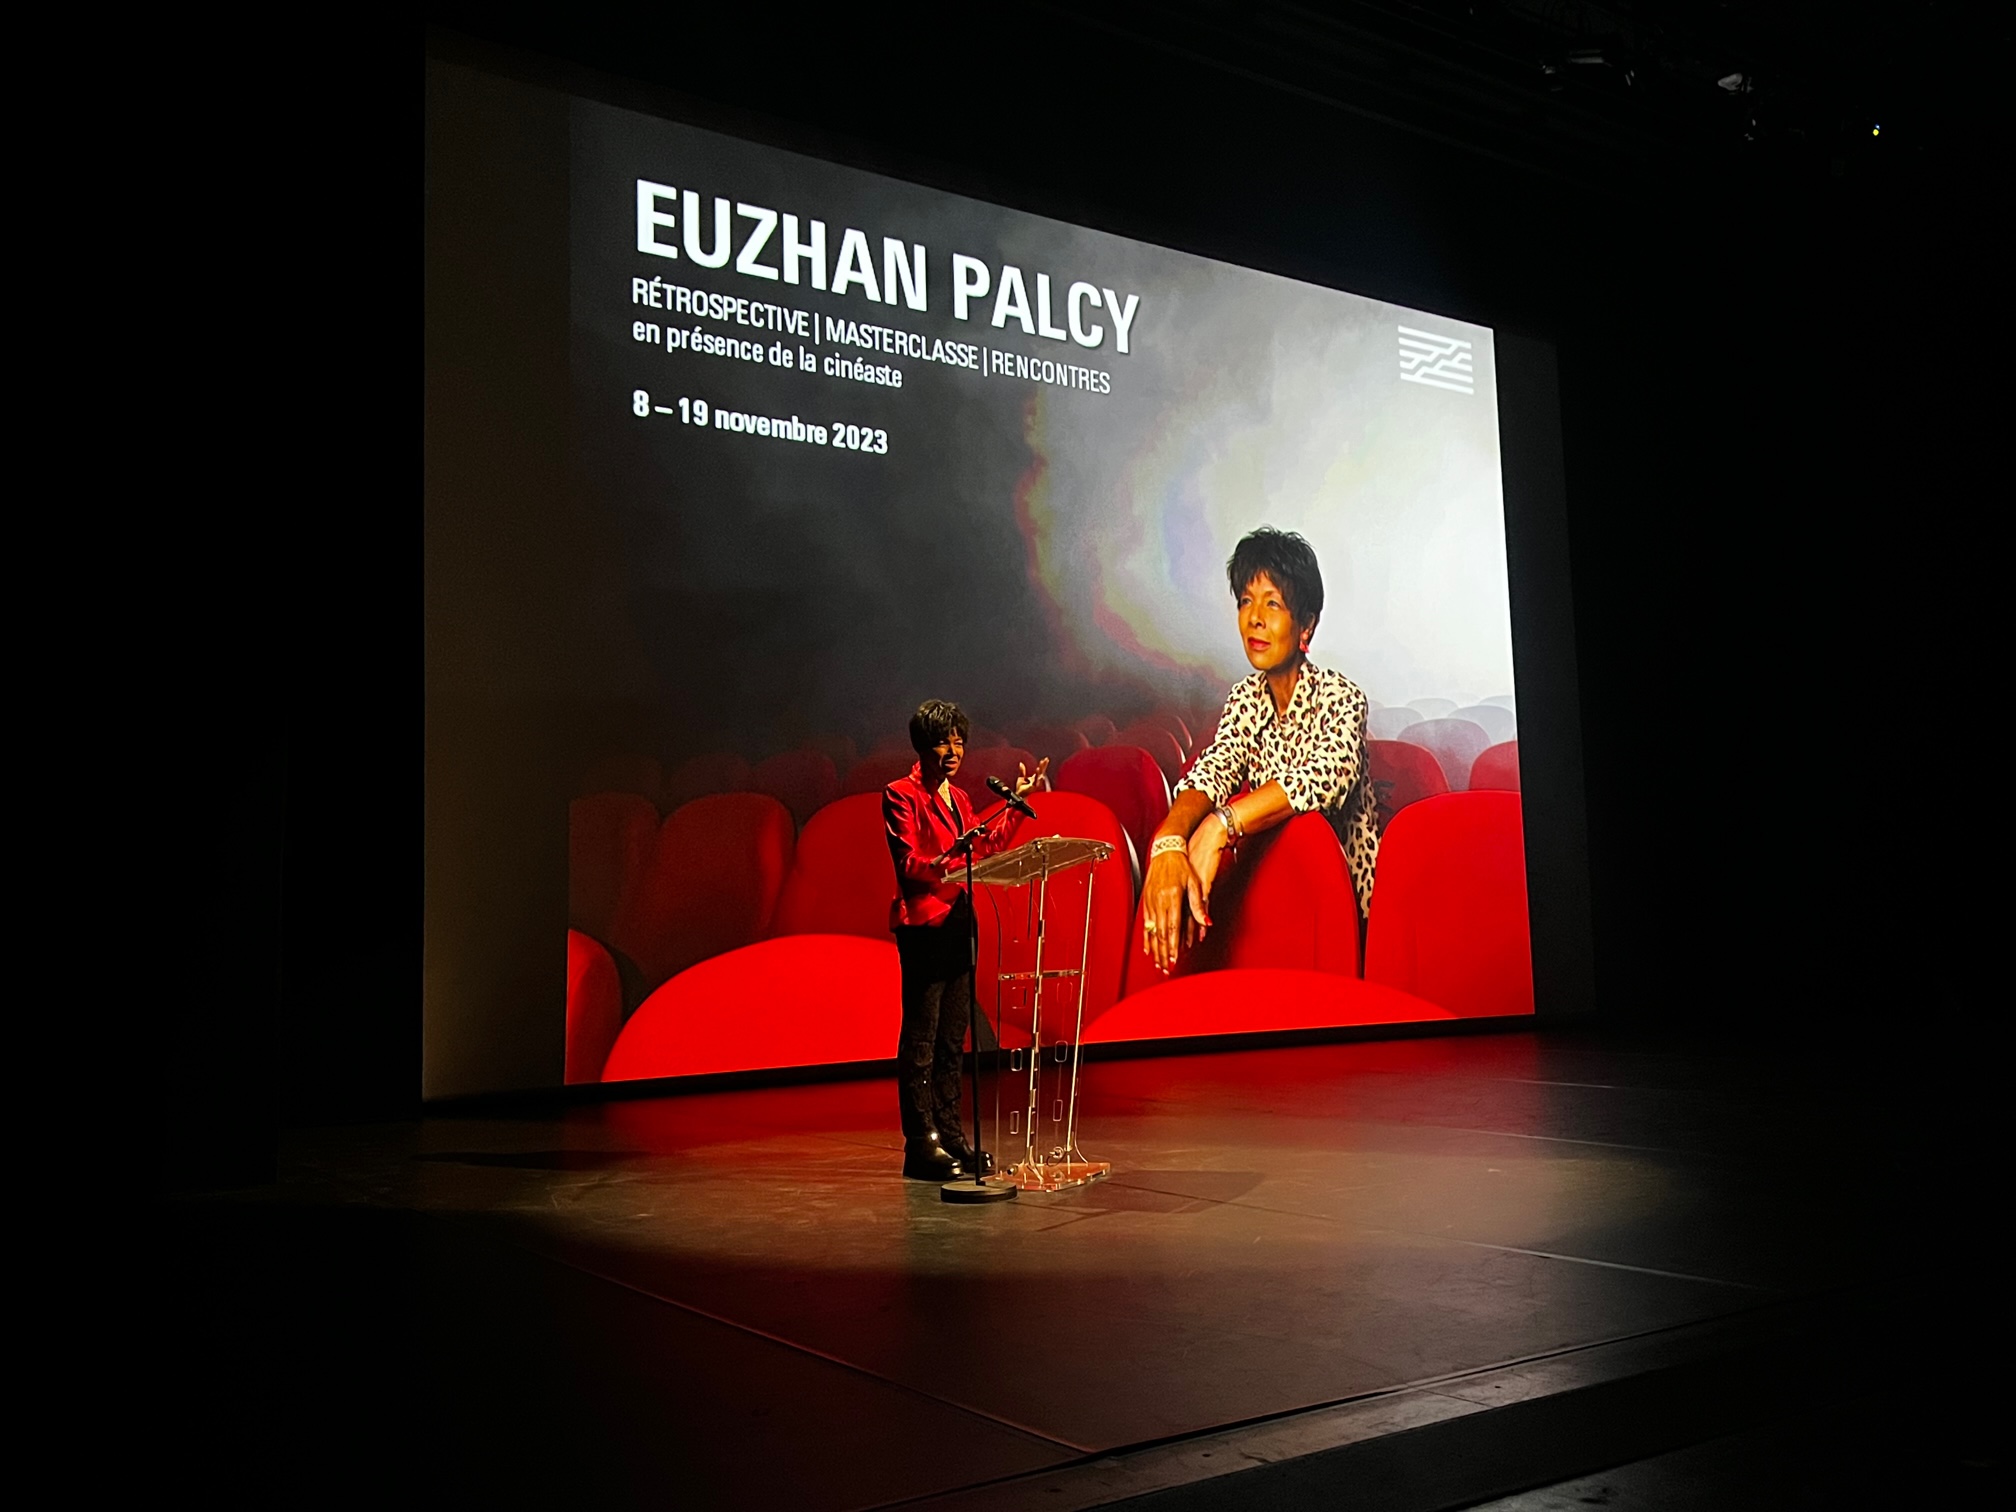     Rétrospective Euzhan Palcy au Centre Pompidou 

